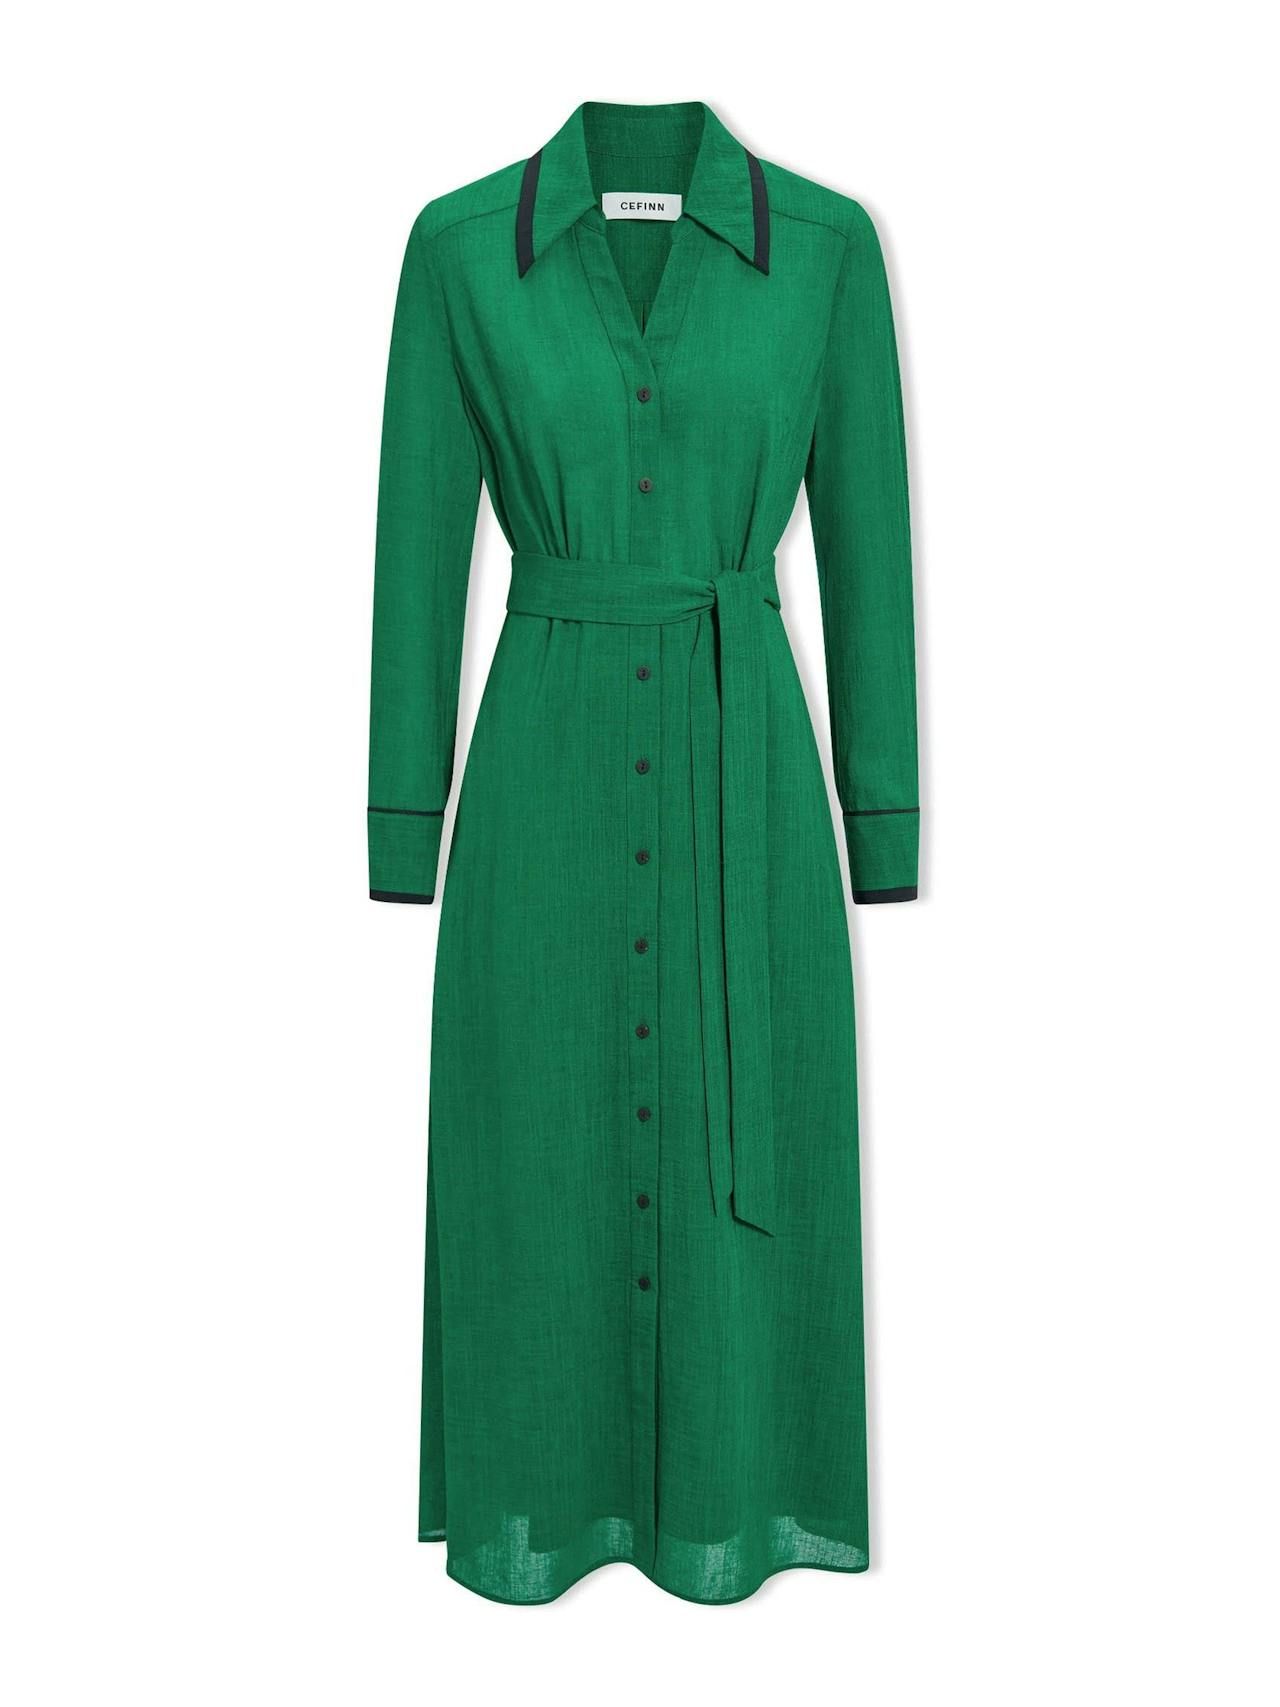 Emerald green Fallon Techni voile maxi dress